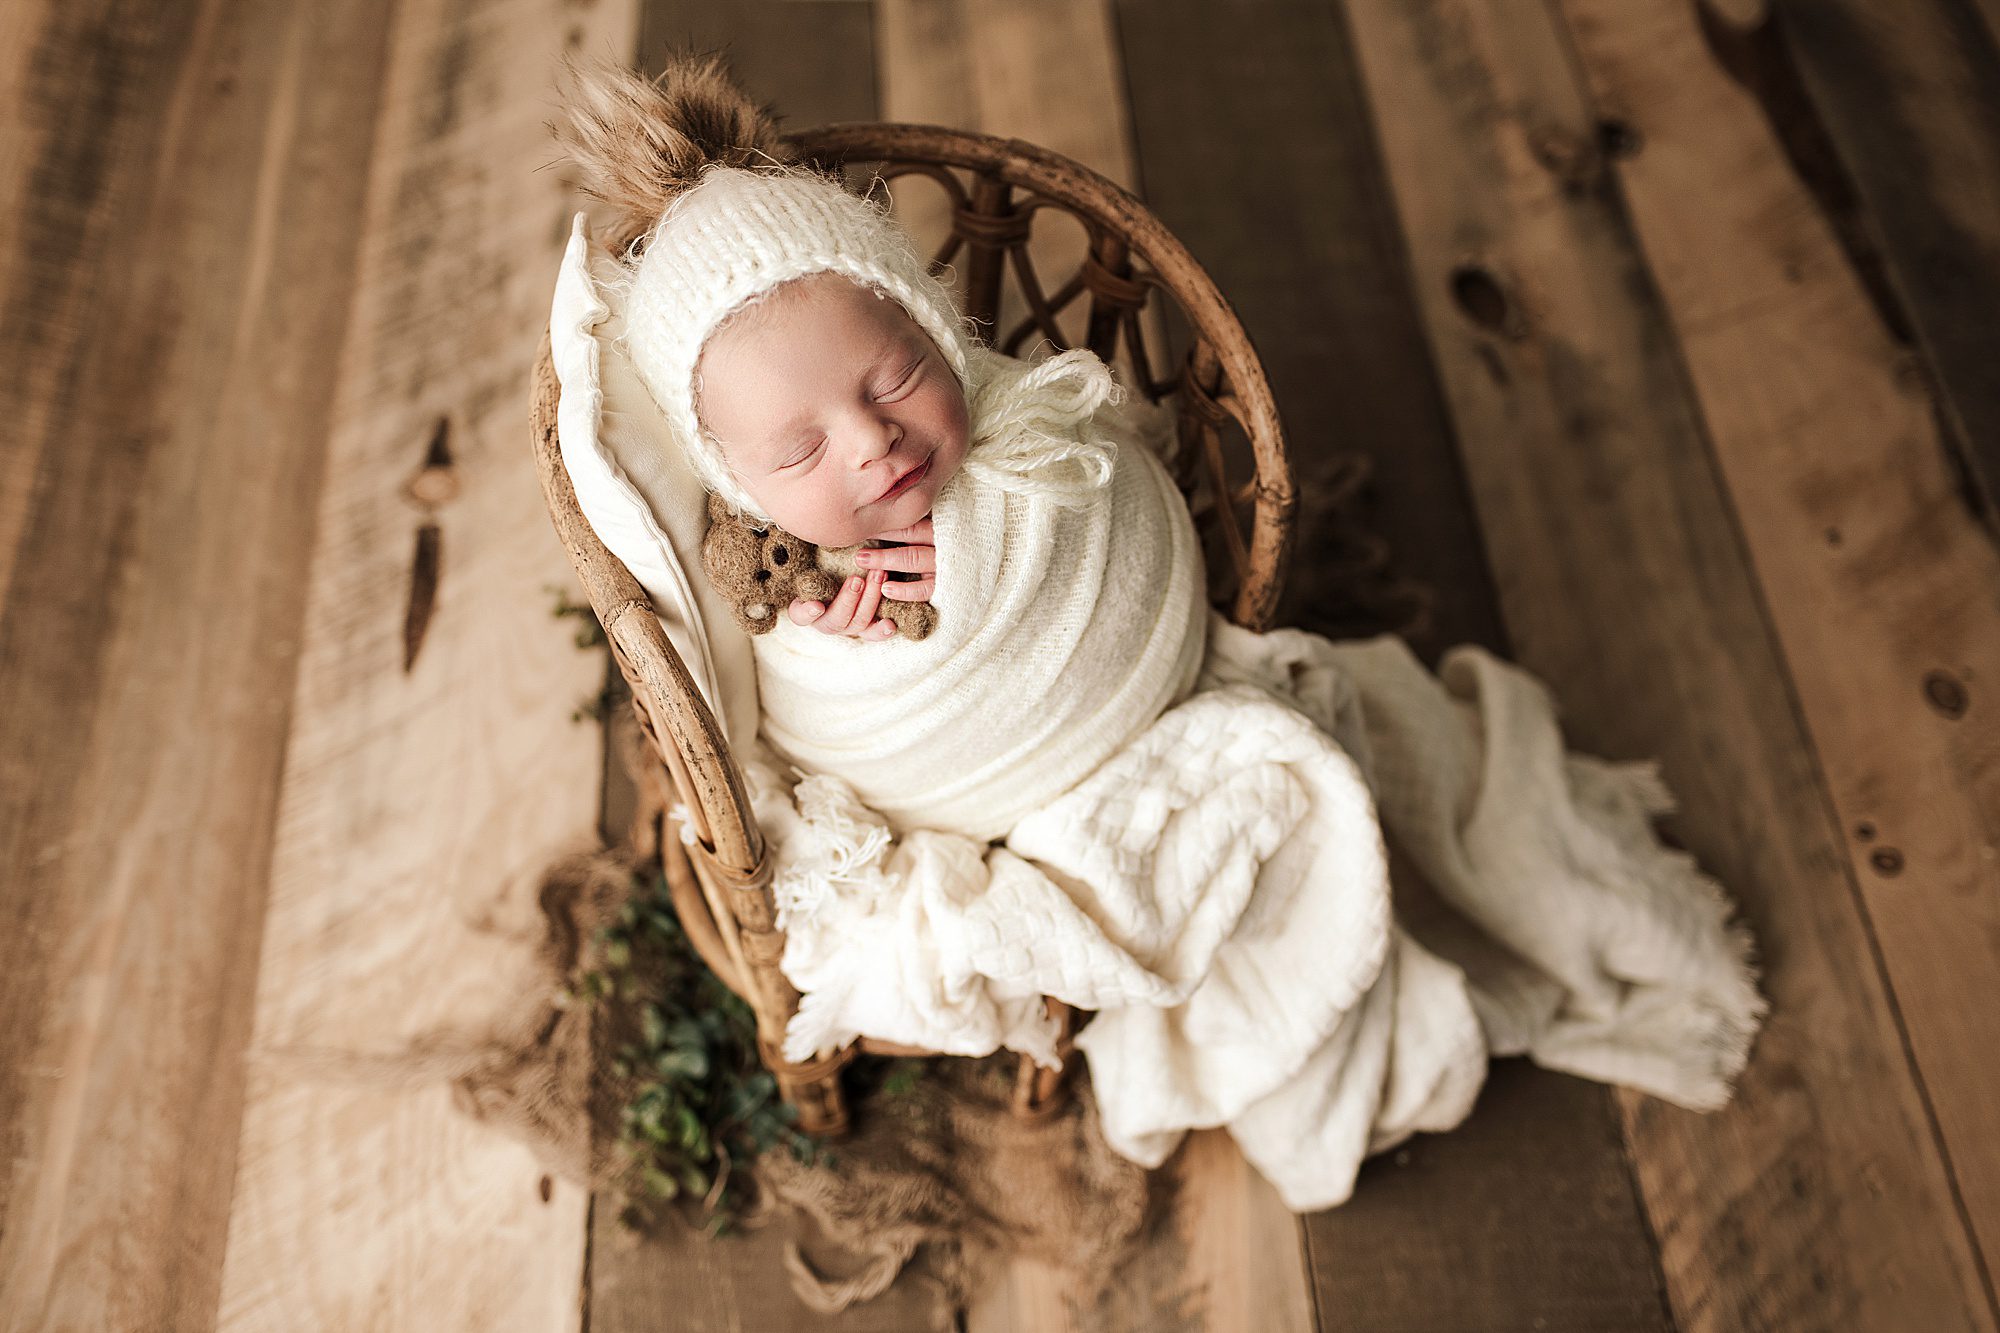 edmonton newborn photographer, edmonton maternity photographer